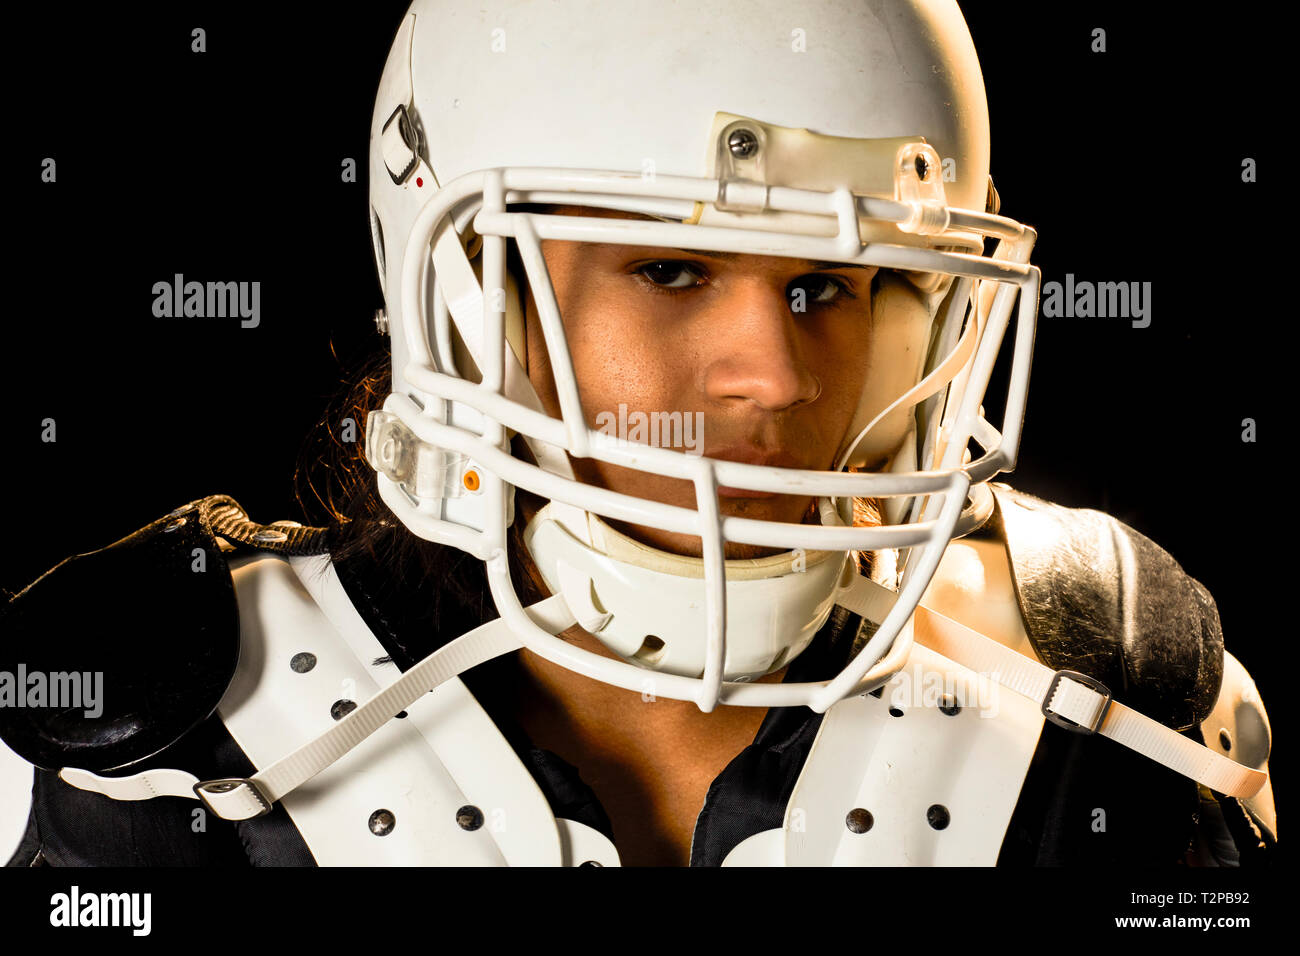 Ritratto di giocatore di football, sfondo nero Foto Stock